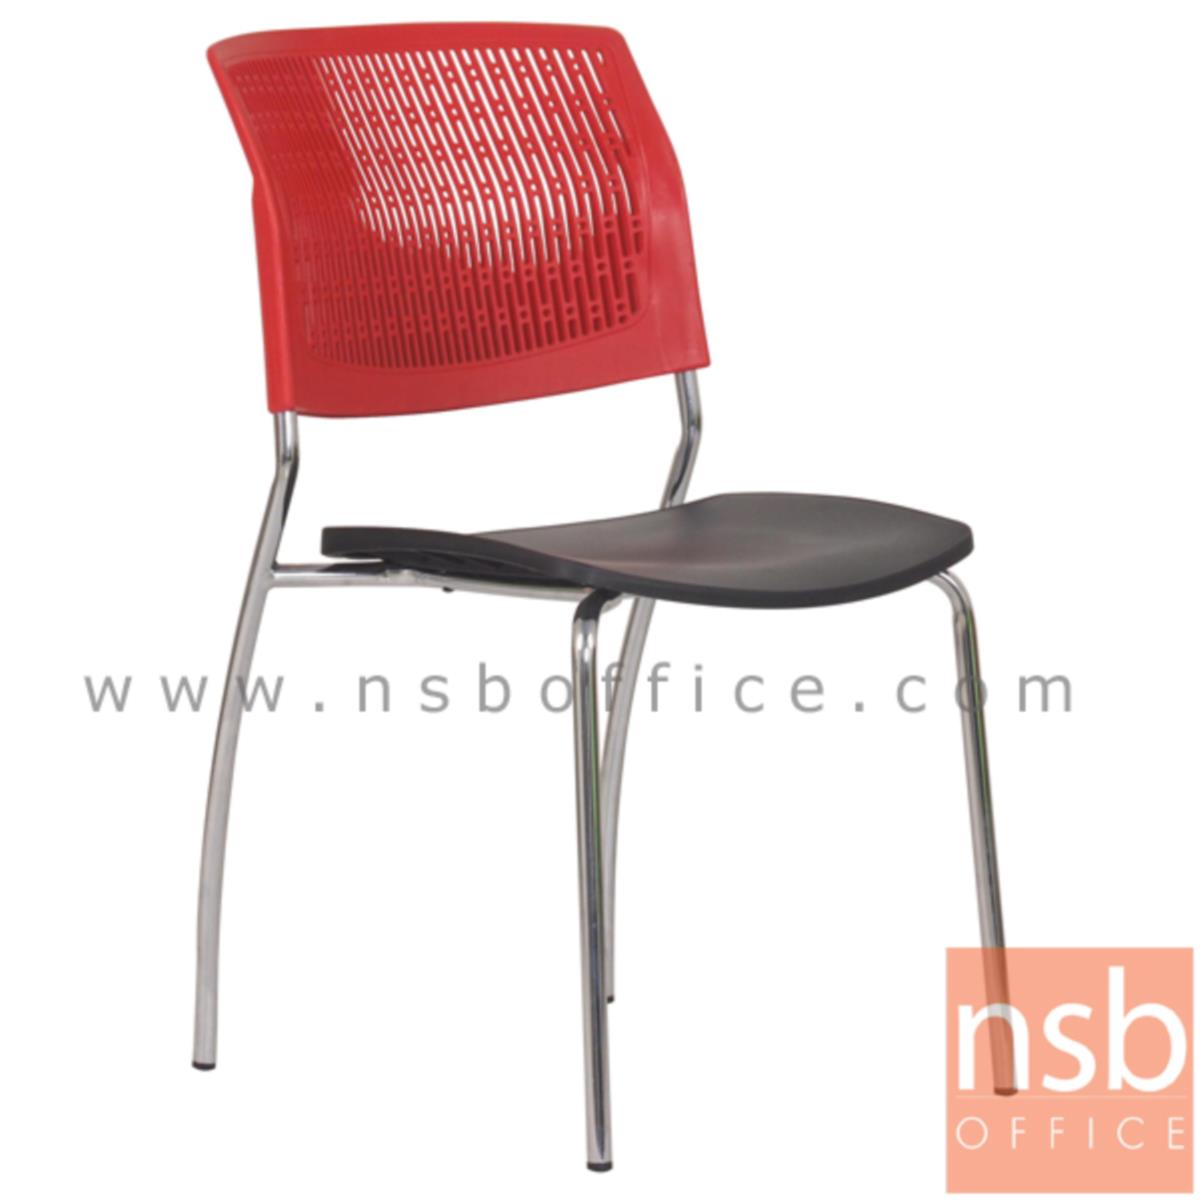 เก้าอี้อเนกประสงค์เฟรมโพลี่ รุ่น MS011  ขาเหล็กชุบโครเมี่ยม